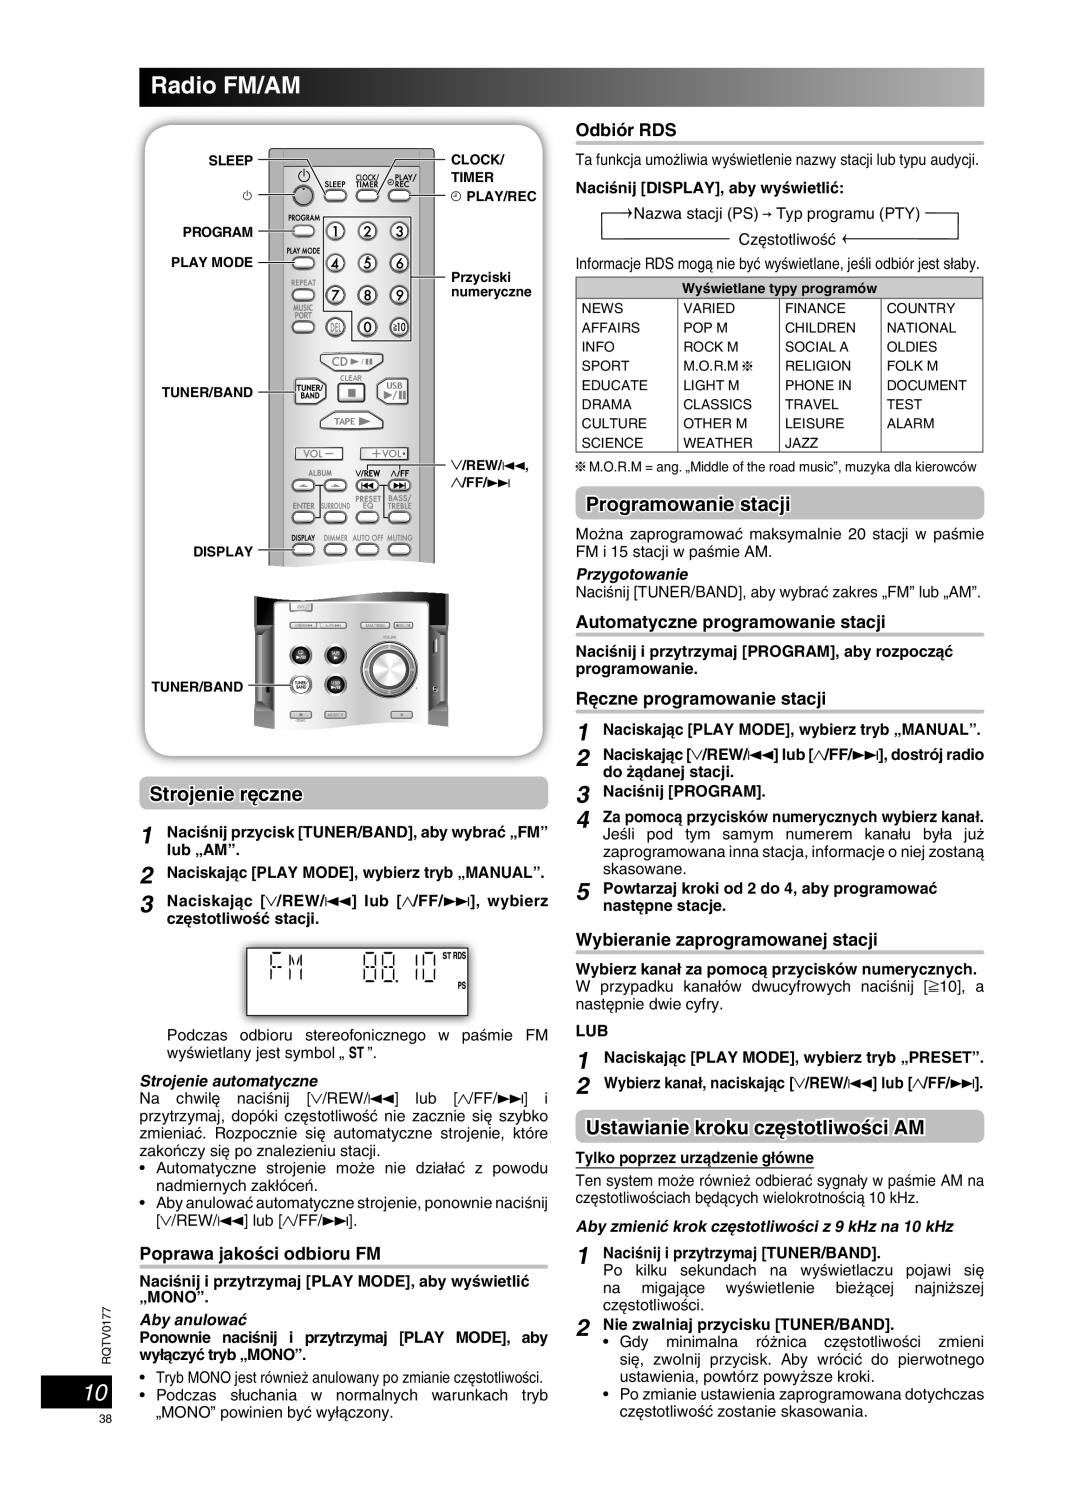 Panasonic SC-PM45 Radio FM/AM, Strojenie r´czne, Programowanie stacji, Ustawianie kroku cz´stotliwoÊci AM, Aby anulowaç 